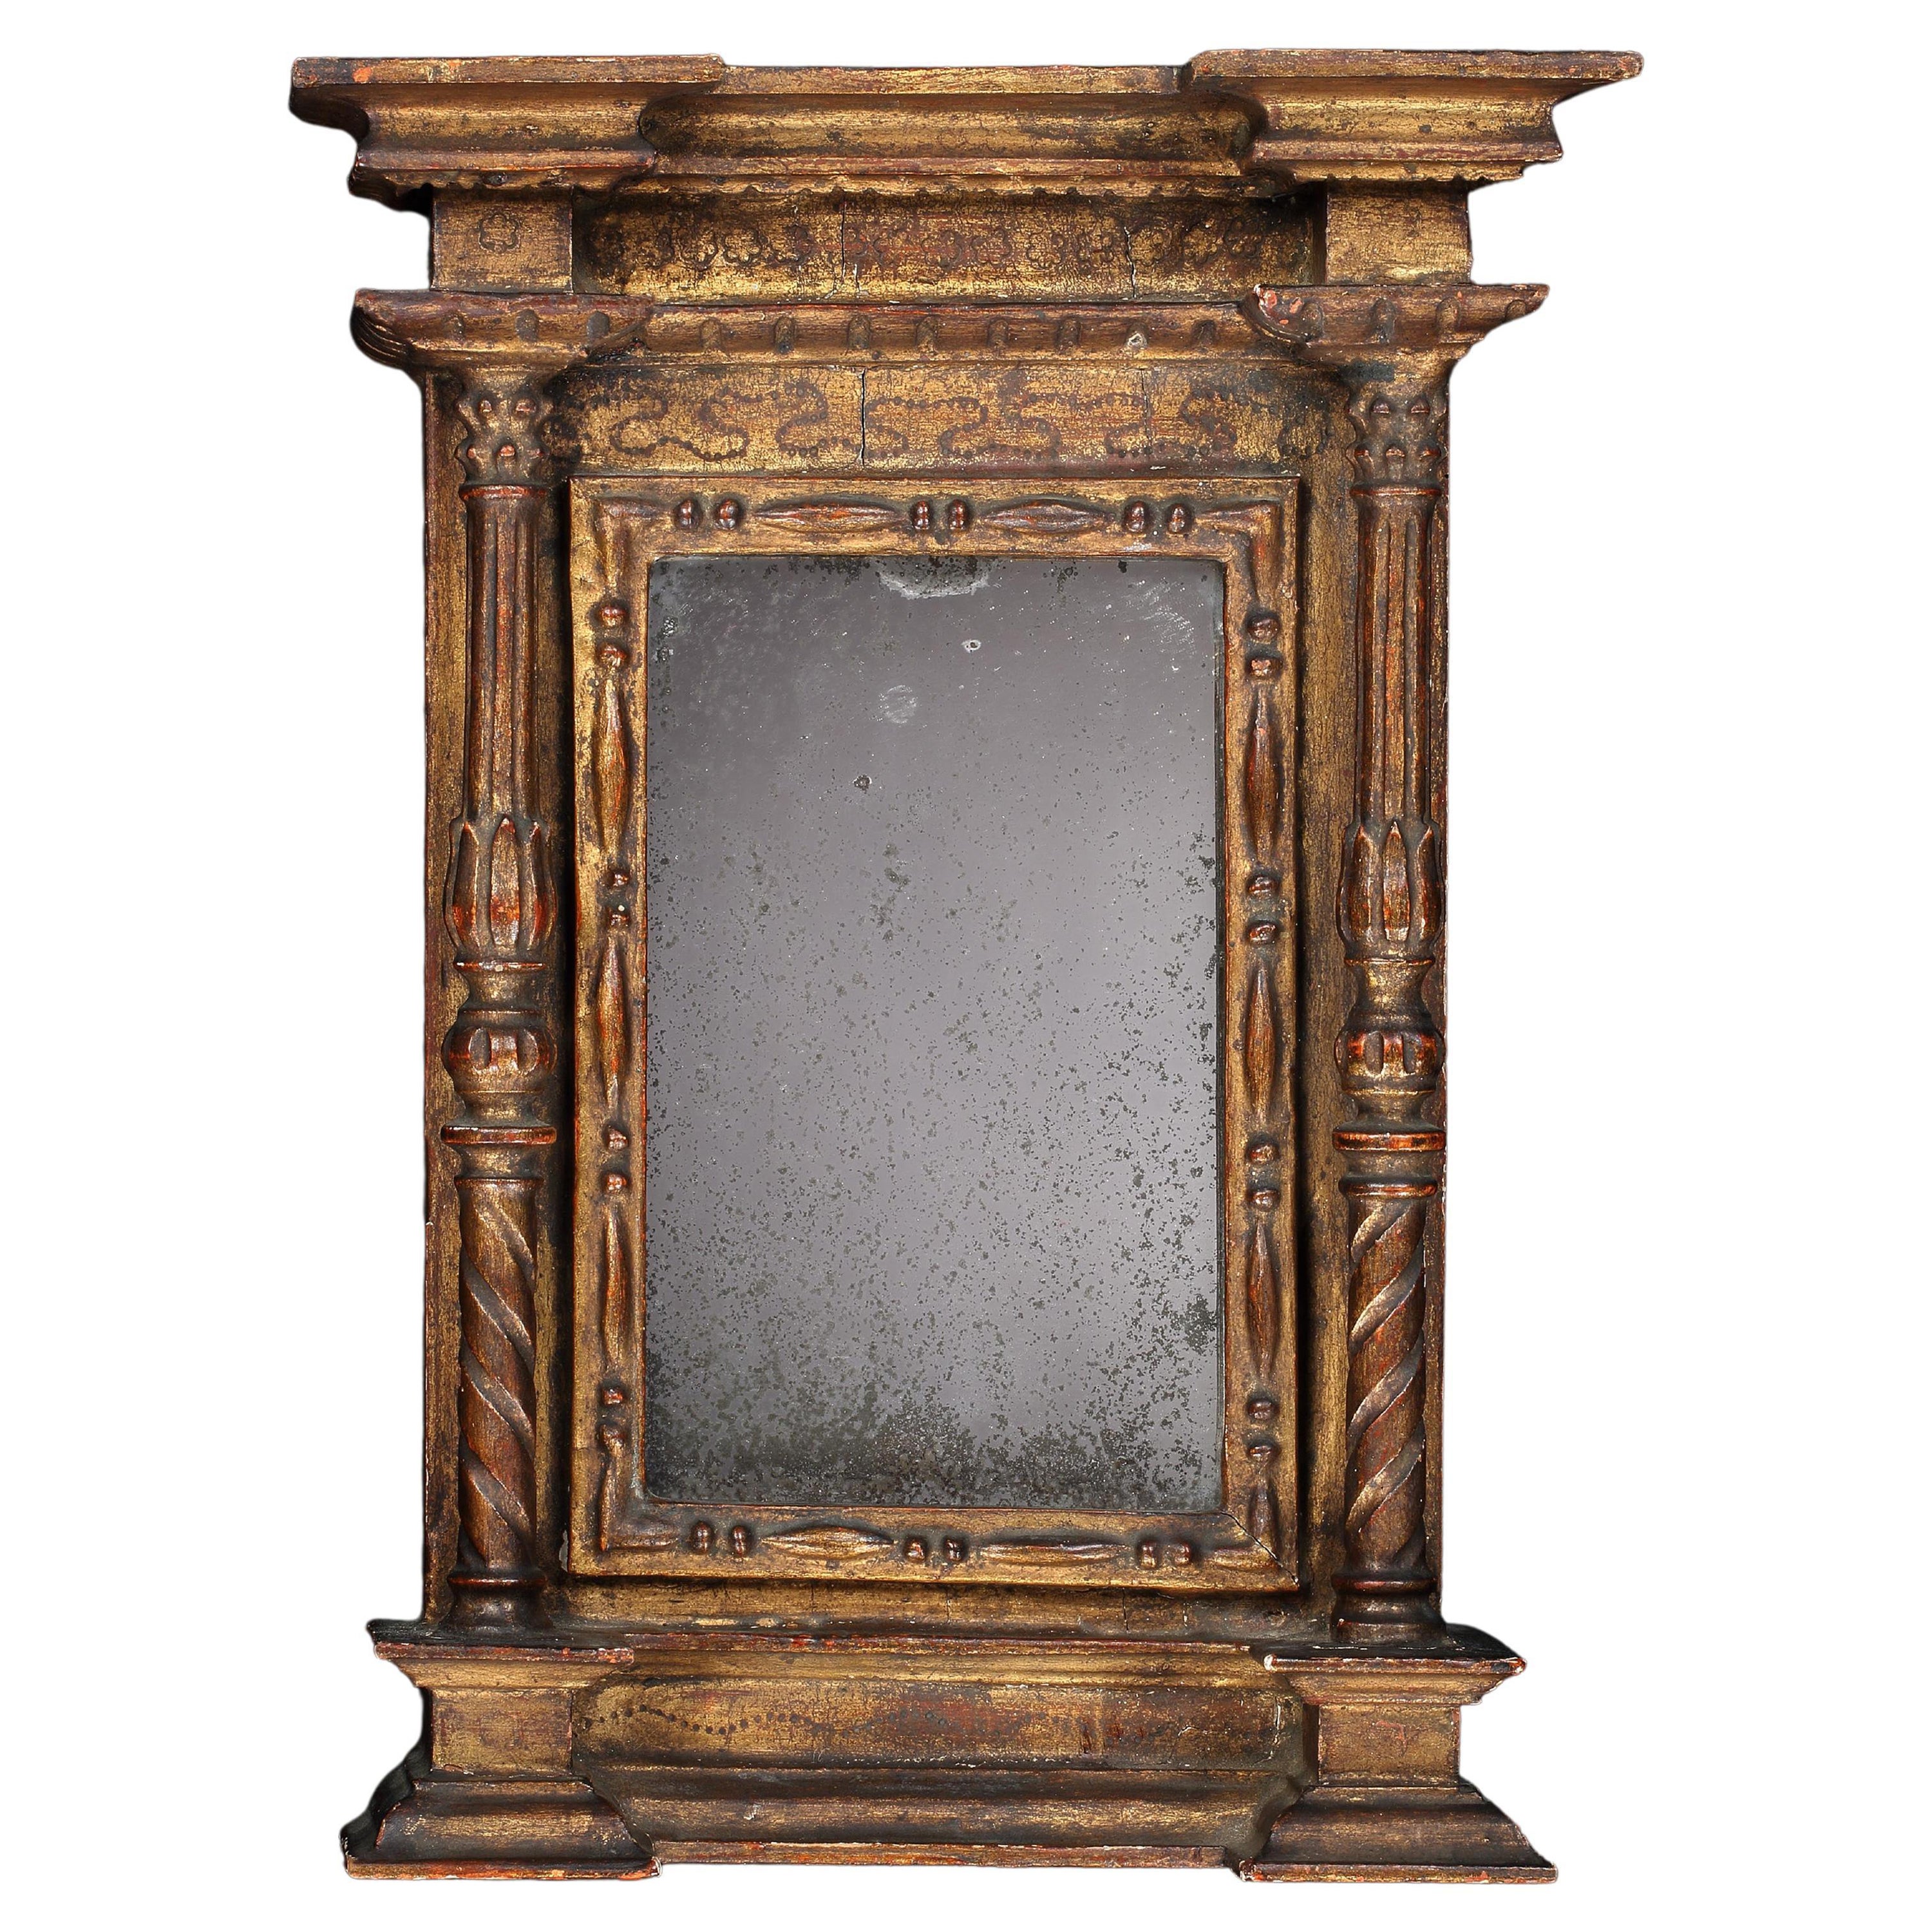 Spiegel Minature Neoklassisch vergoldeter italienischer Spiegel, 18. Jahrhundert, geformt und eingeschnitten